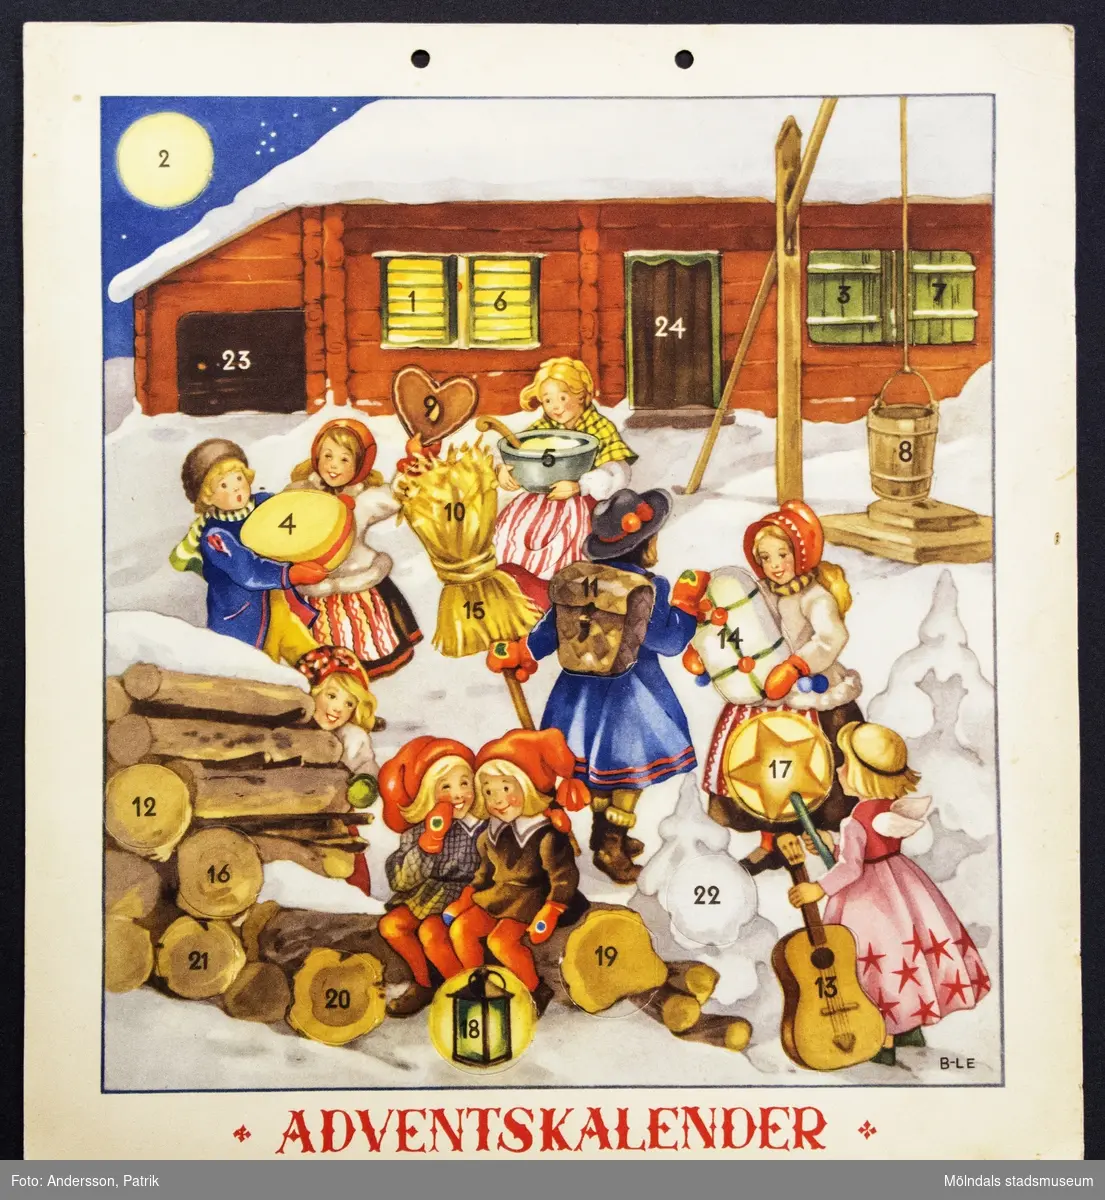 Adventskalender,  från cirka 1940 - 50-talet.  Motivet på kalendern är tecknat av Britt-Lis Erlandsson.
Kalendern fick Gunilla Ferm tillsammans med sina systrar Birgitta och Kristina.
I övre kanten på kalendern finns två hål för upphängning.